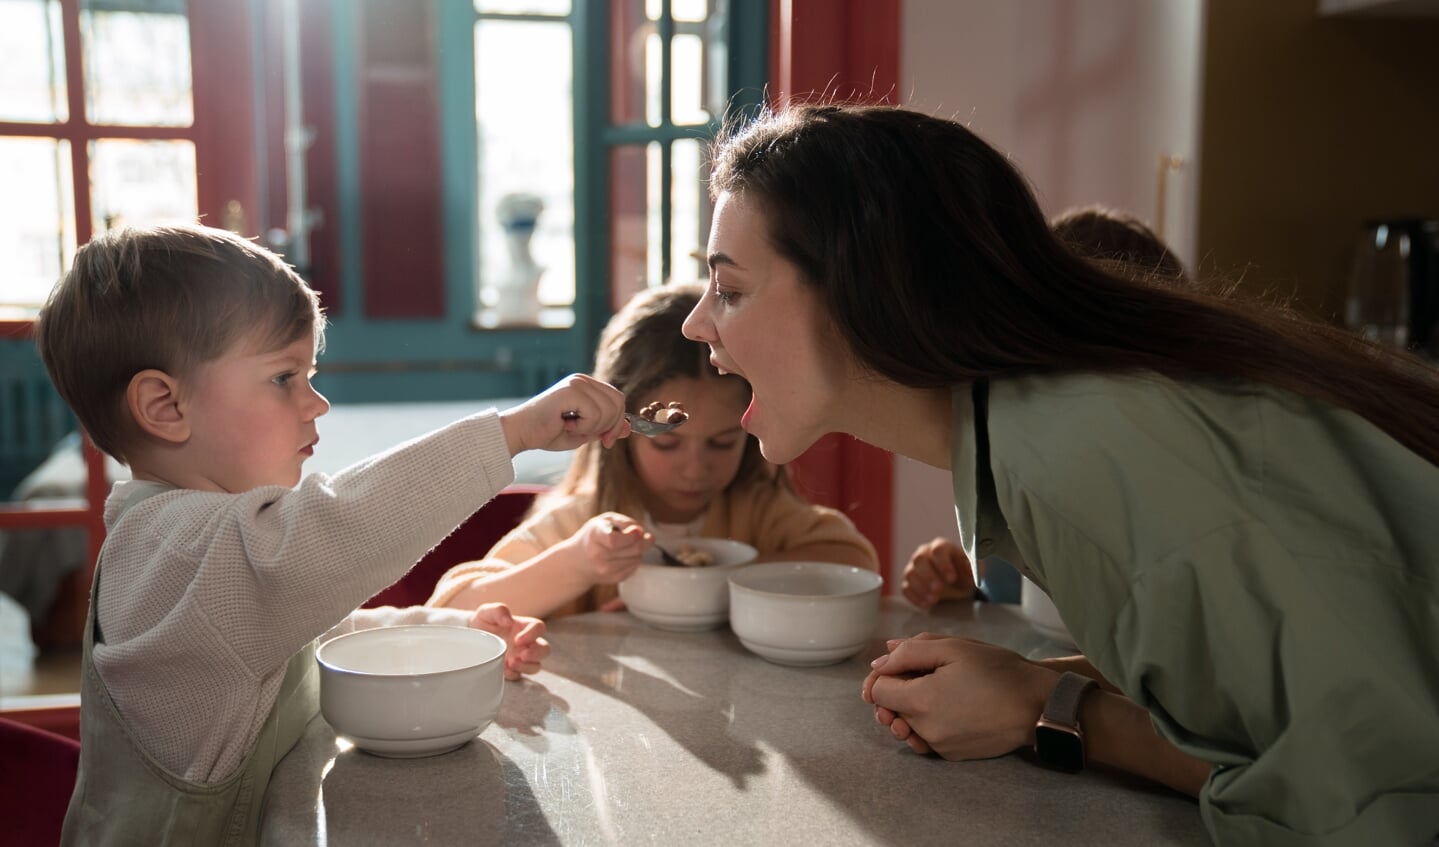 Het eten met kinderen is vaak gezellig, maar kan ook een strijd opleveren.